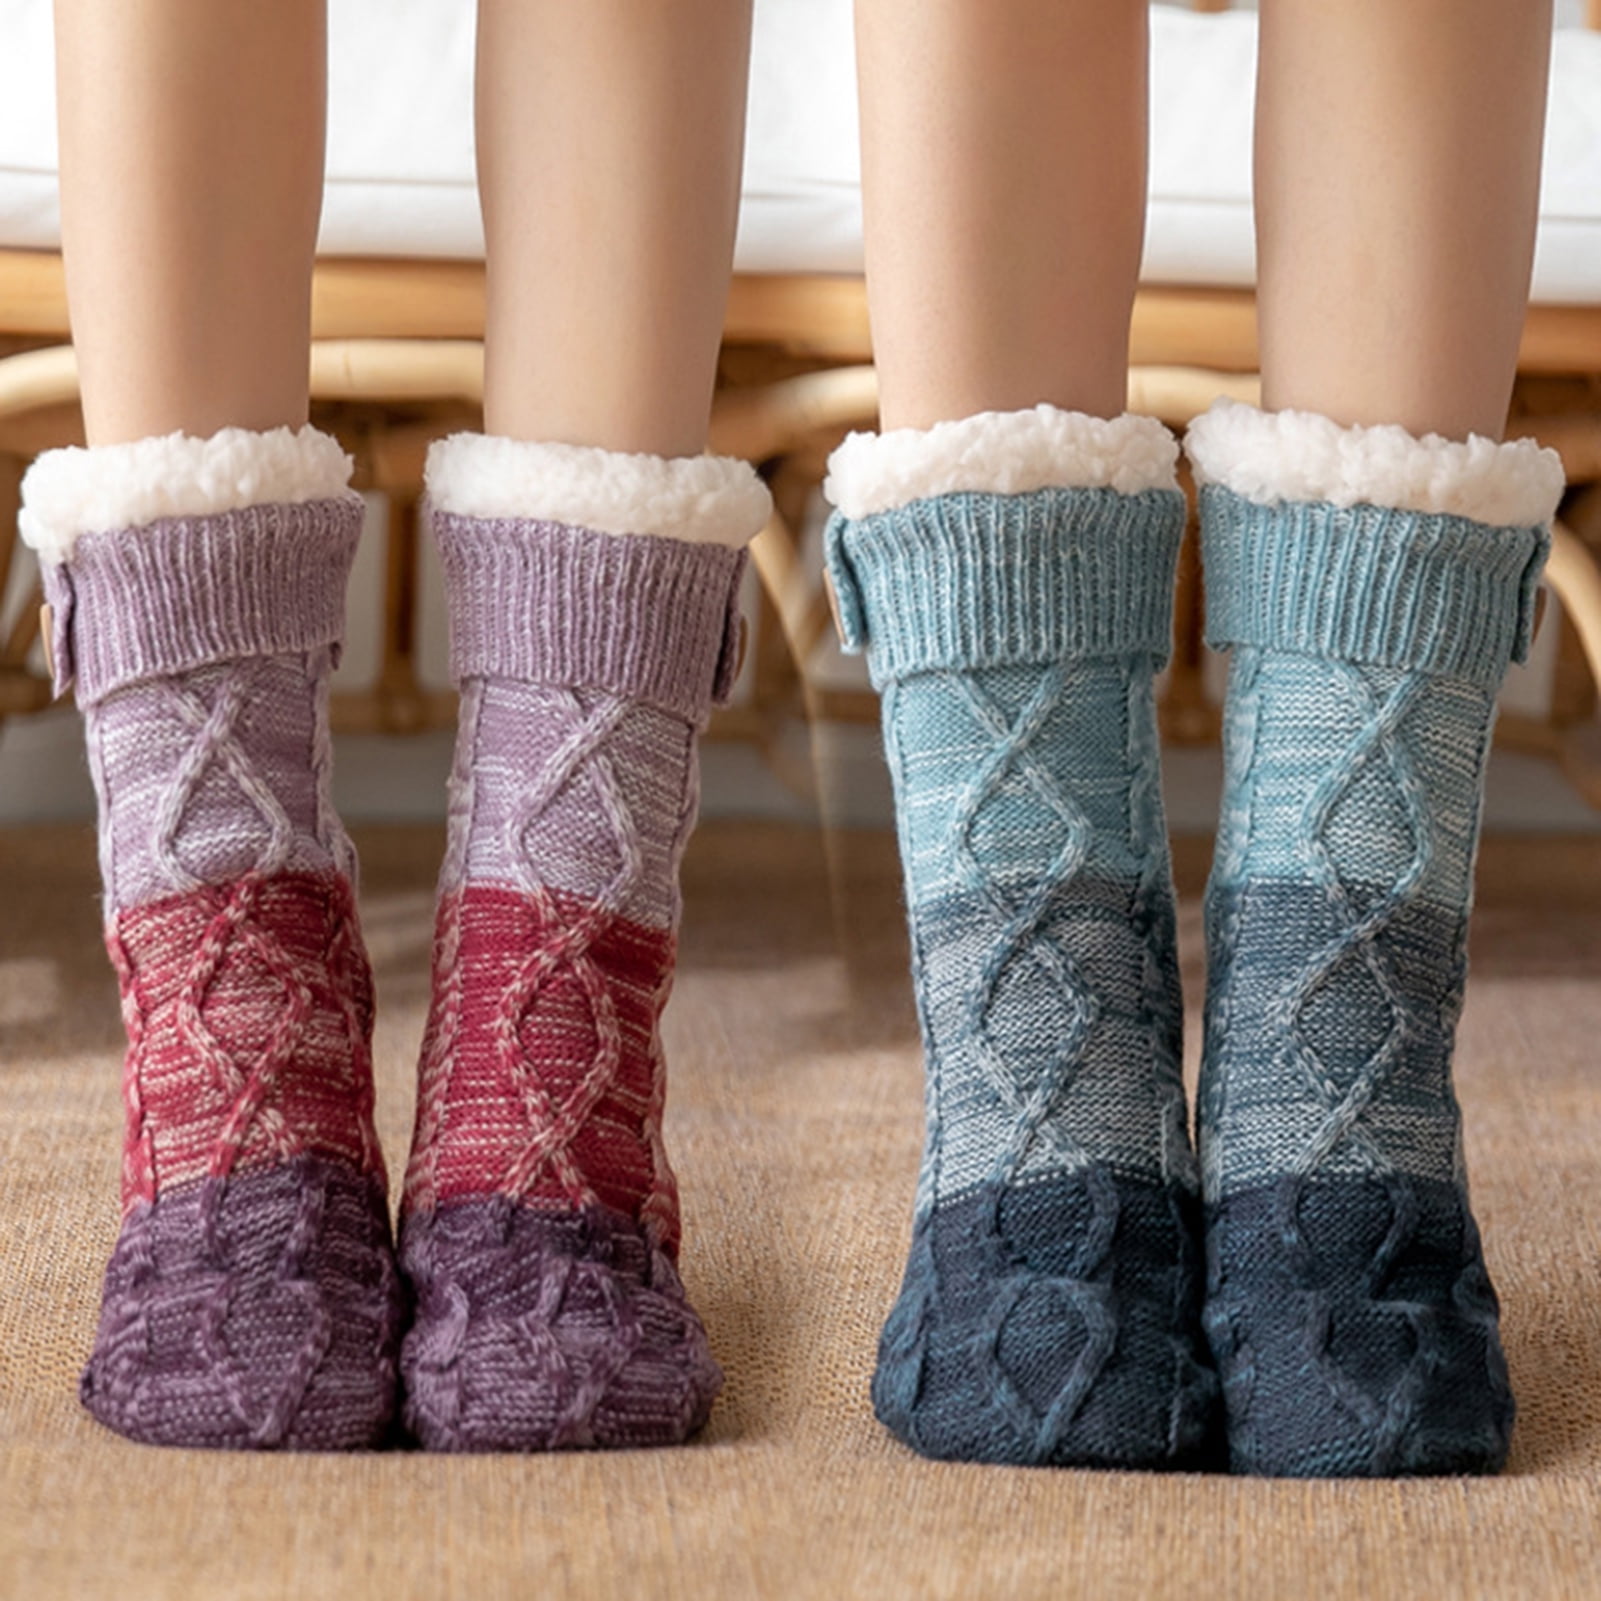 D-GROEE Women's Winter Fuzzy Warm Cozy Sherpa Lined Slipper Socks with ...